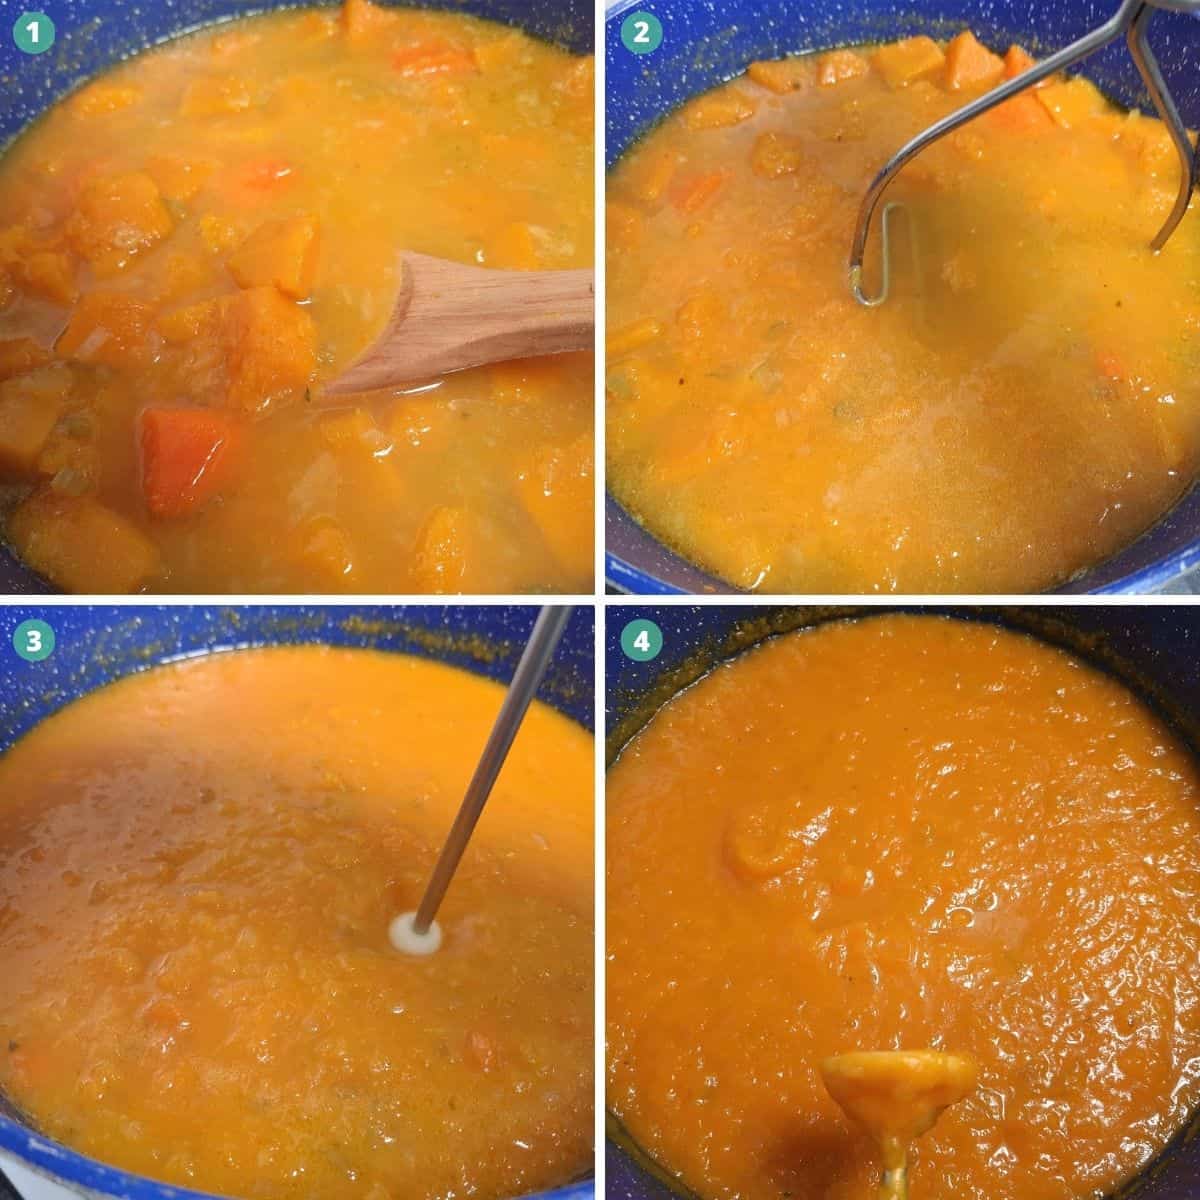 blending-the-homemade-australian-pumpkin-soup